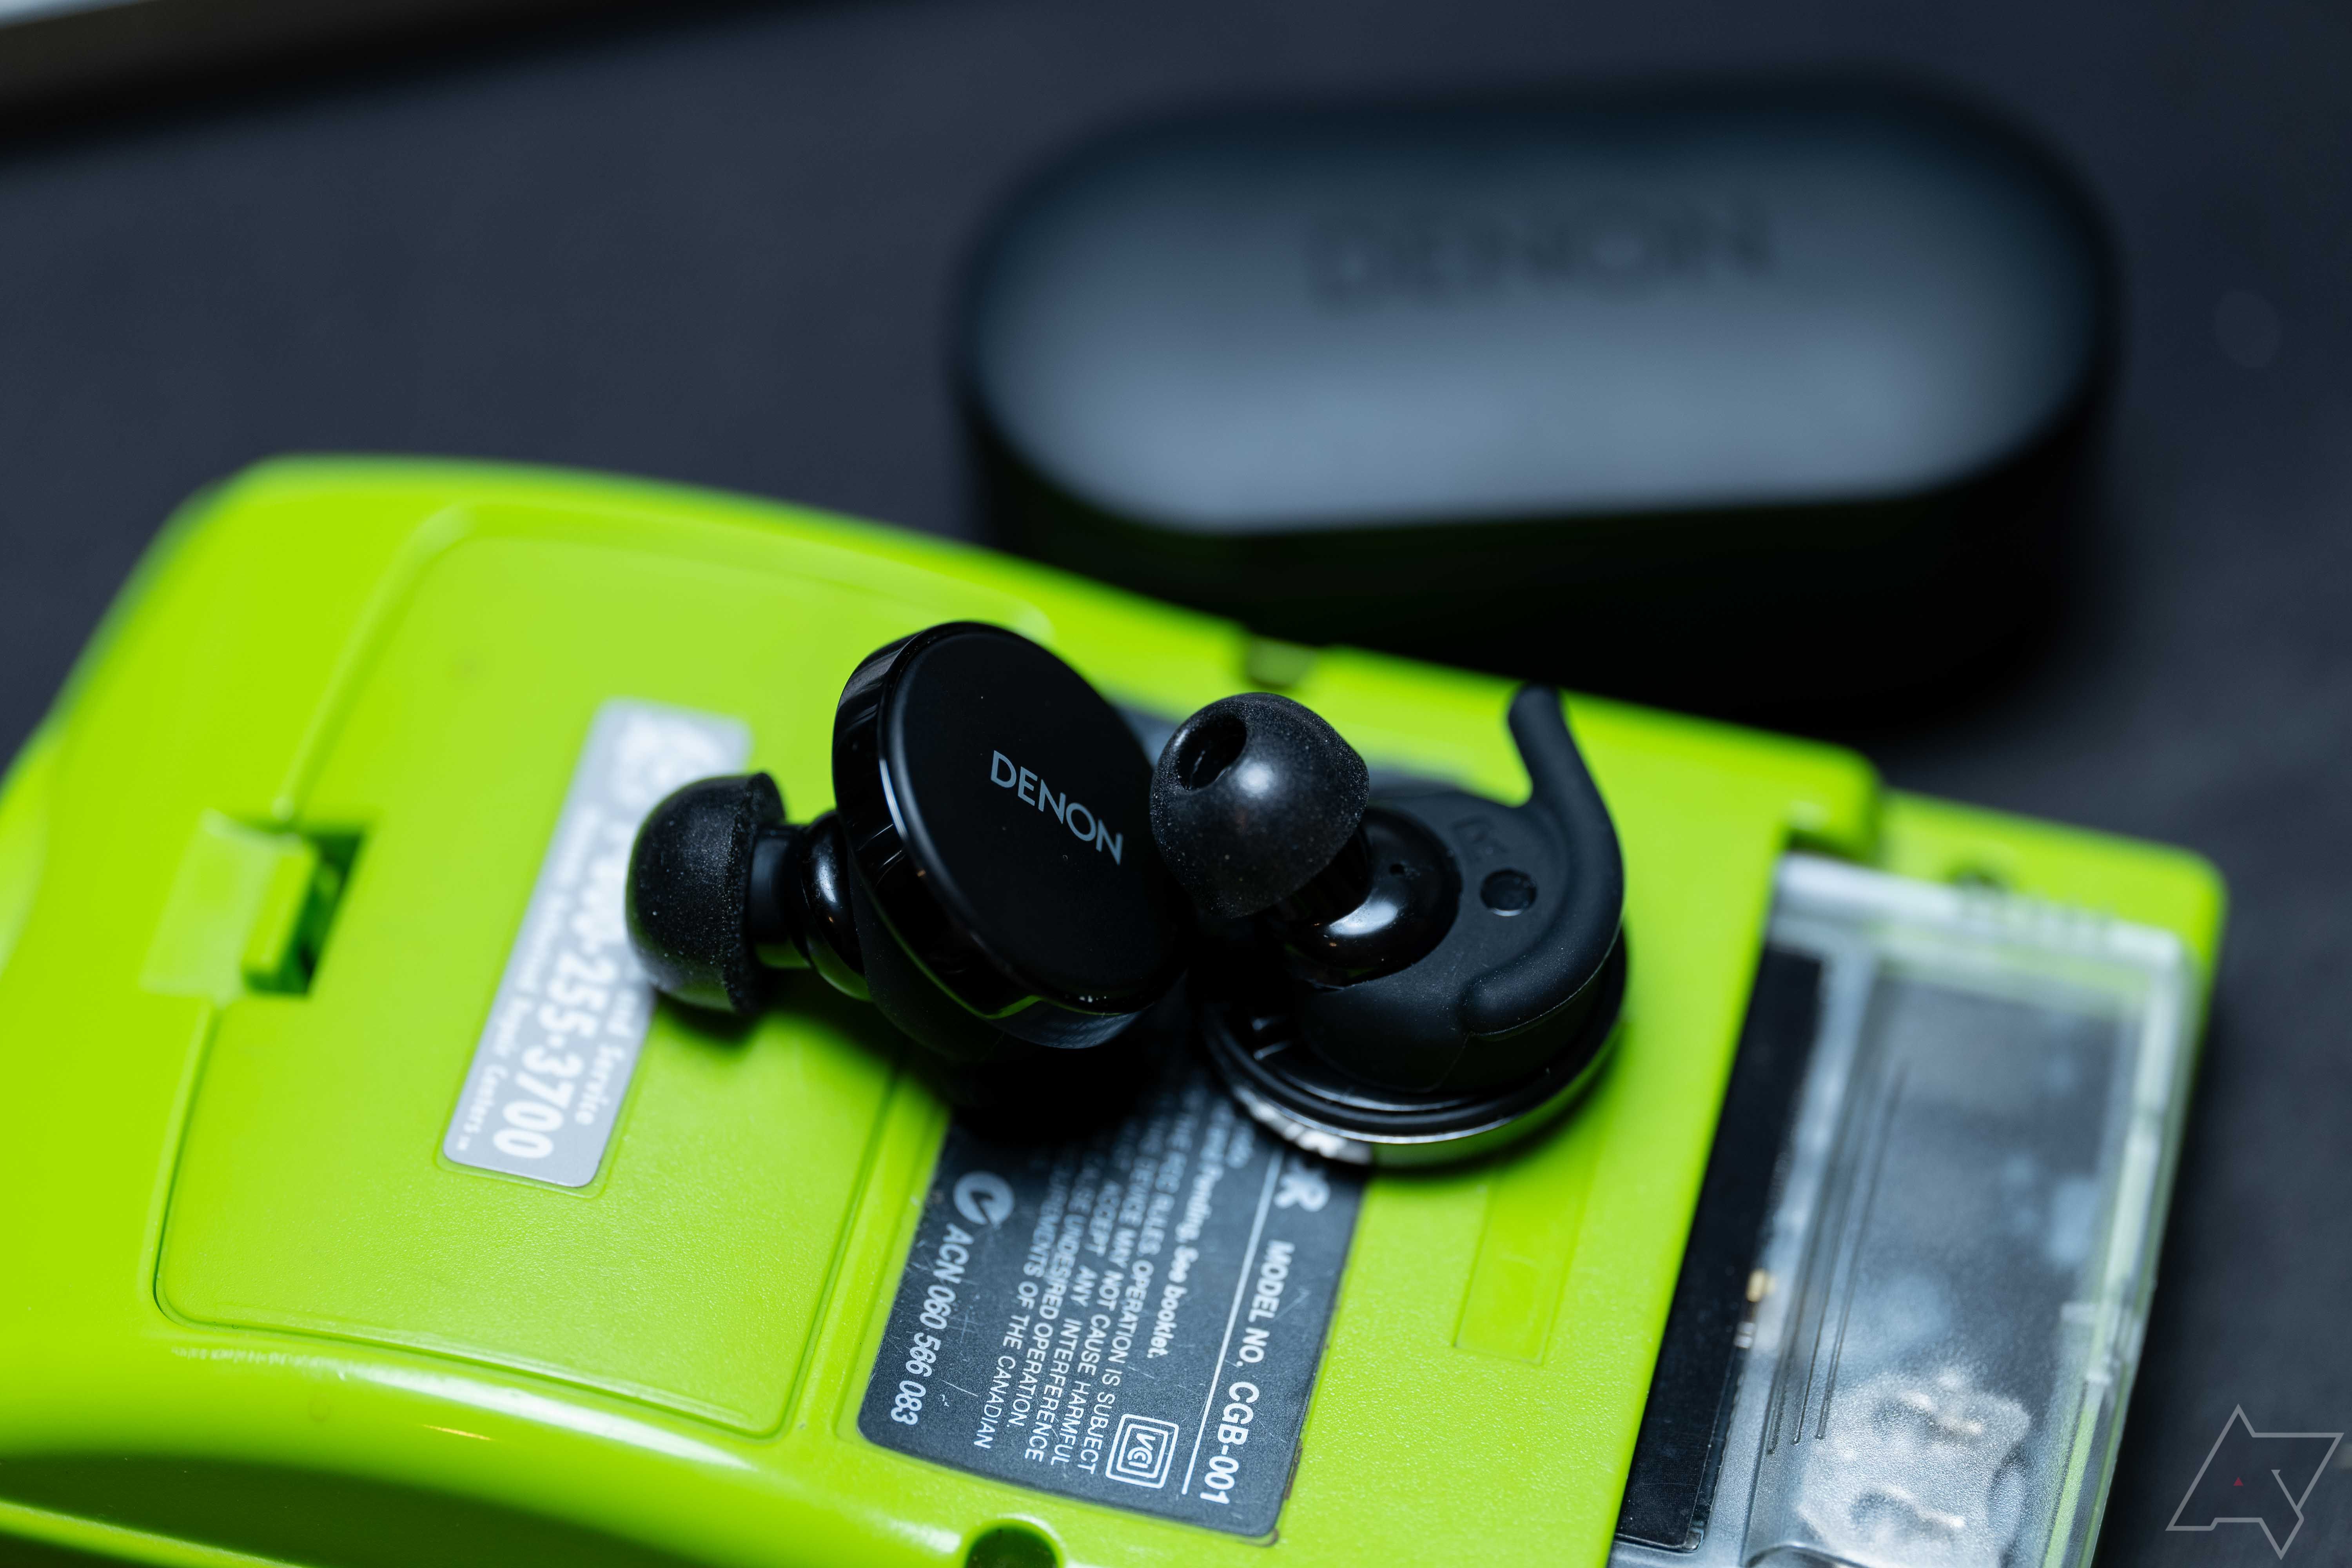 Os fones de ouvido Denon PerL Pro colocados na parte de trás de um Gameboy Color verde limão, com asas grandes e pontas de espuma nos fones de ouvido